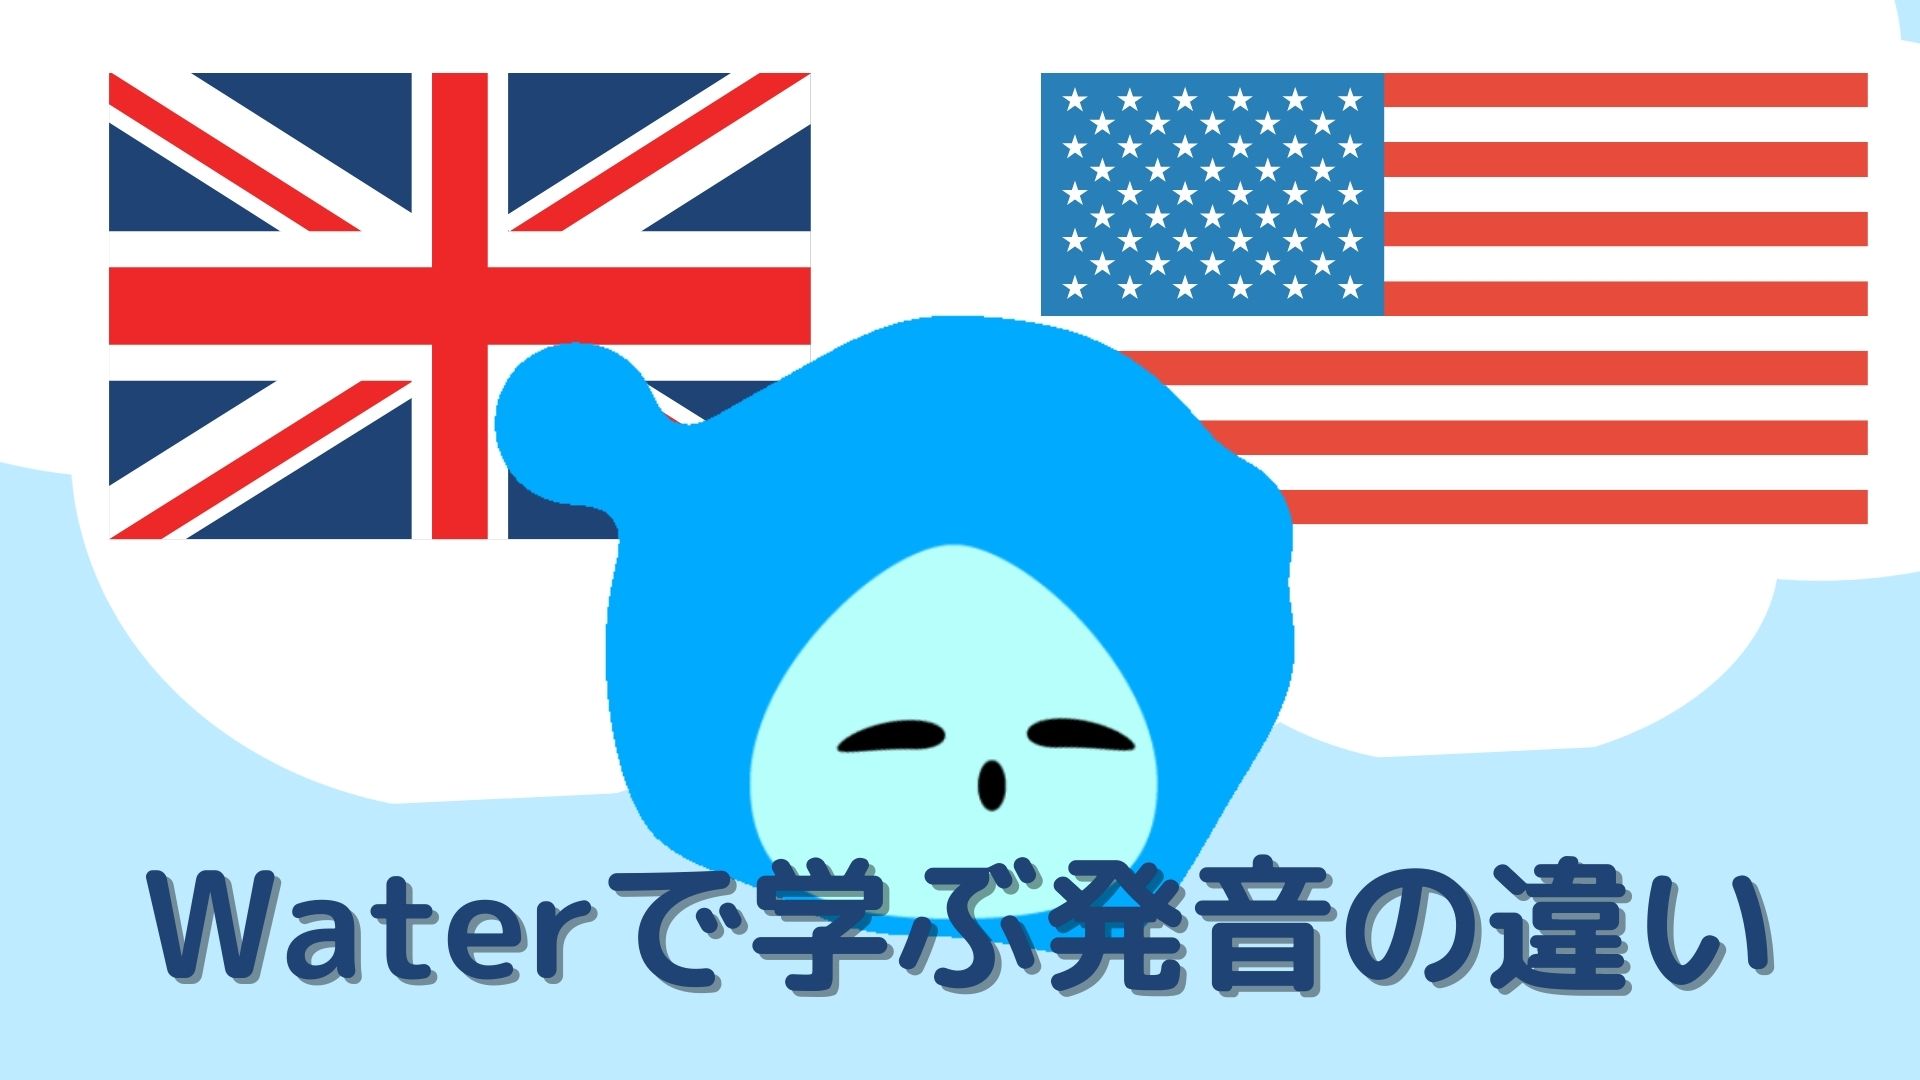 waterで学ぶアメリカ英語とイギリス英語の違い、アメリカ国旗、イギリス国旗。アメリカン、ブリティッシュ、イングリッシュ、アイキャッチ